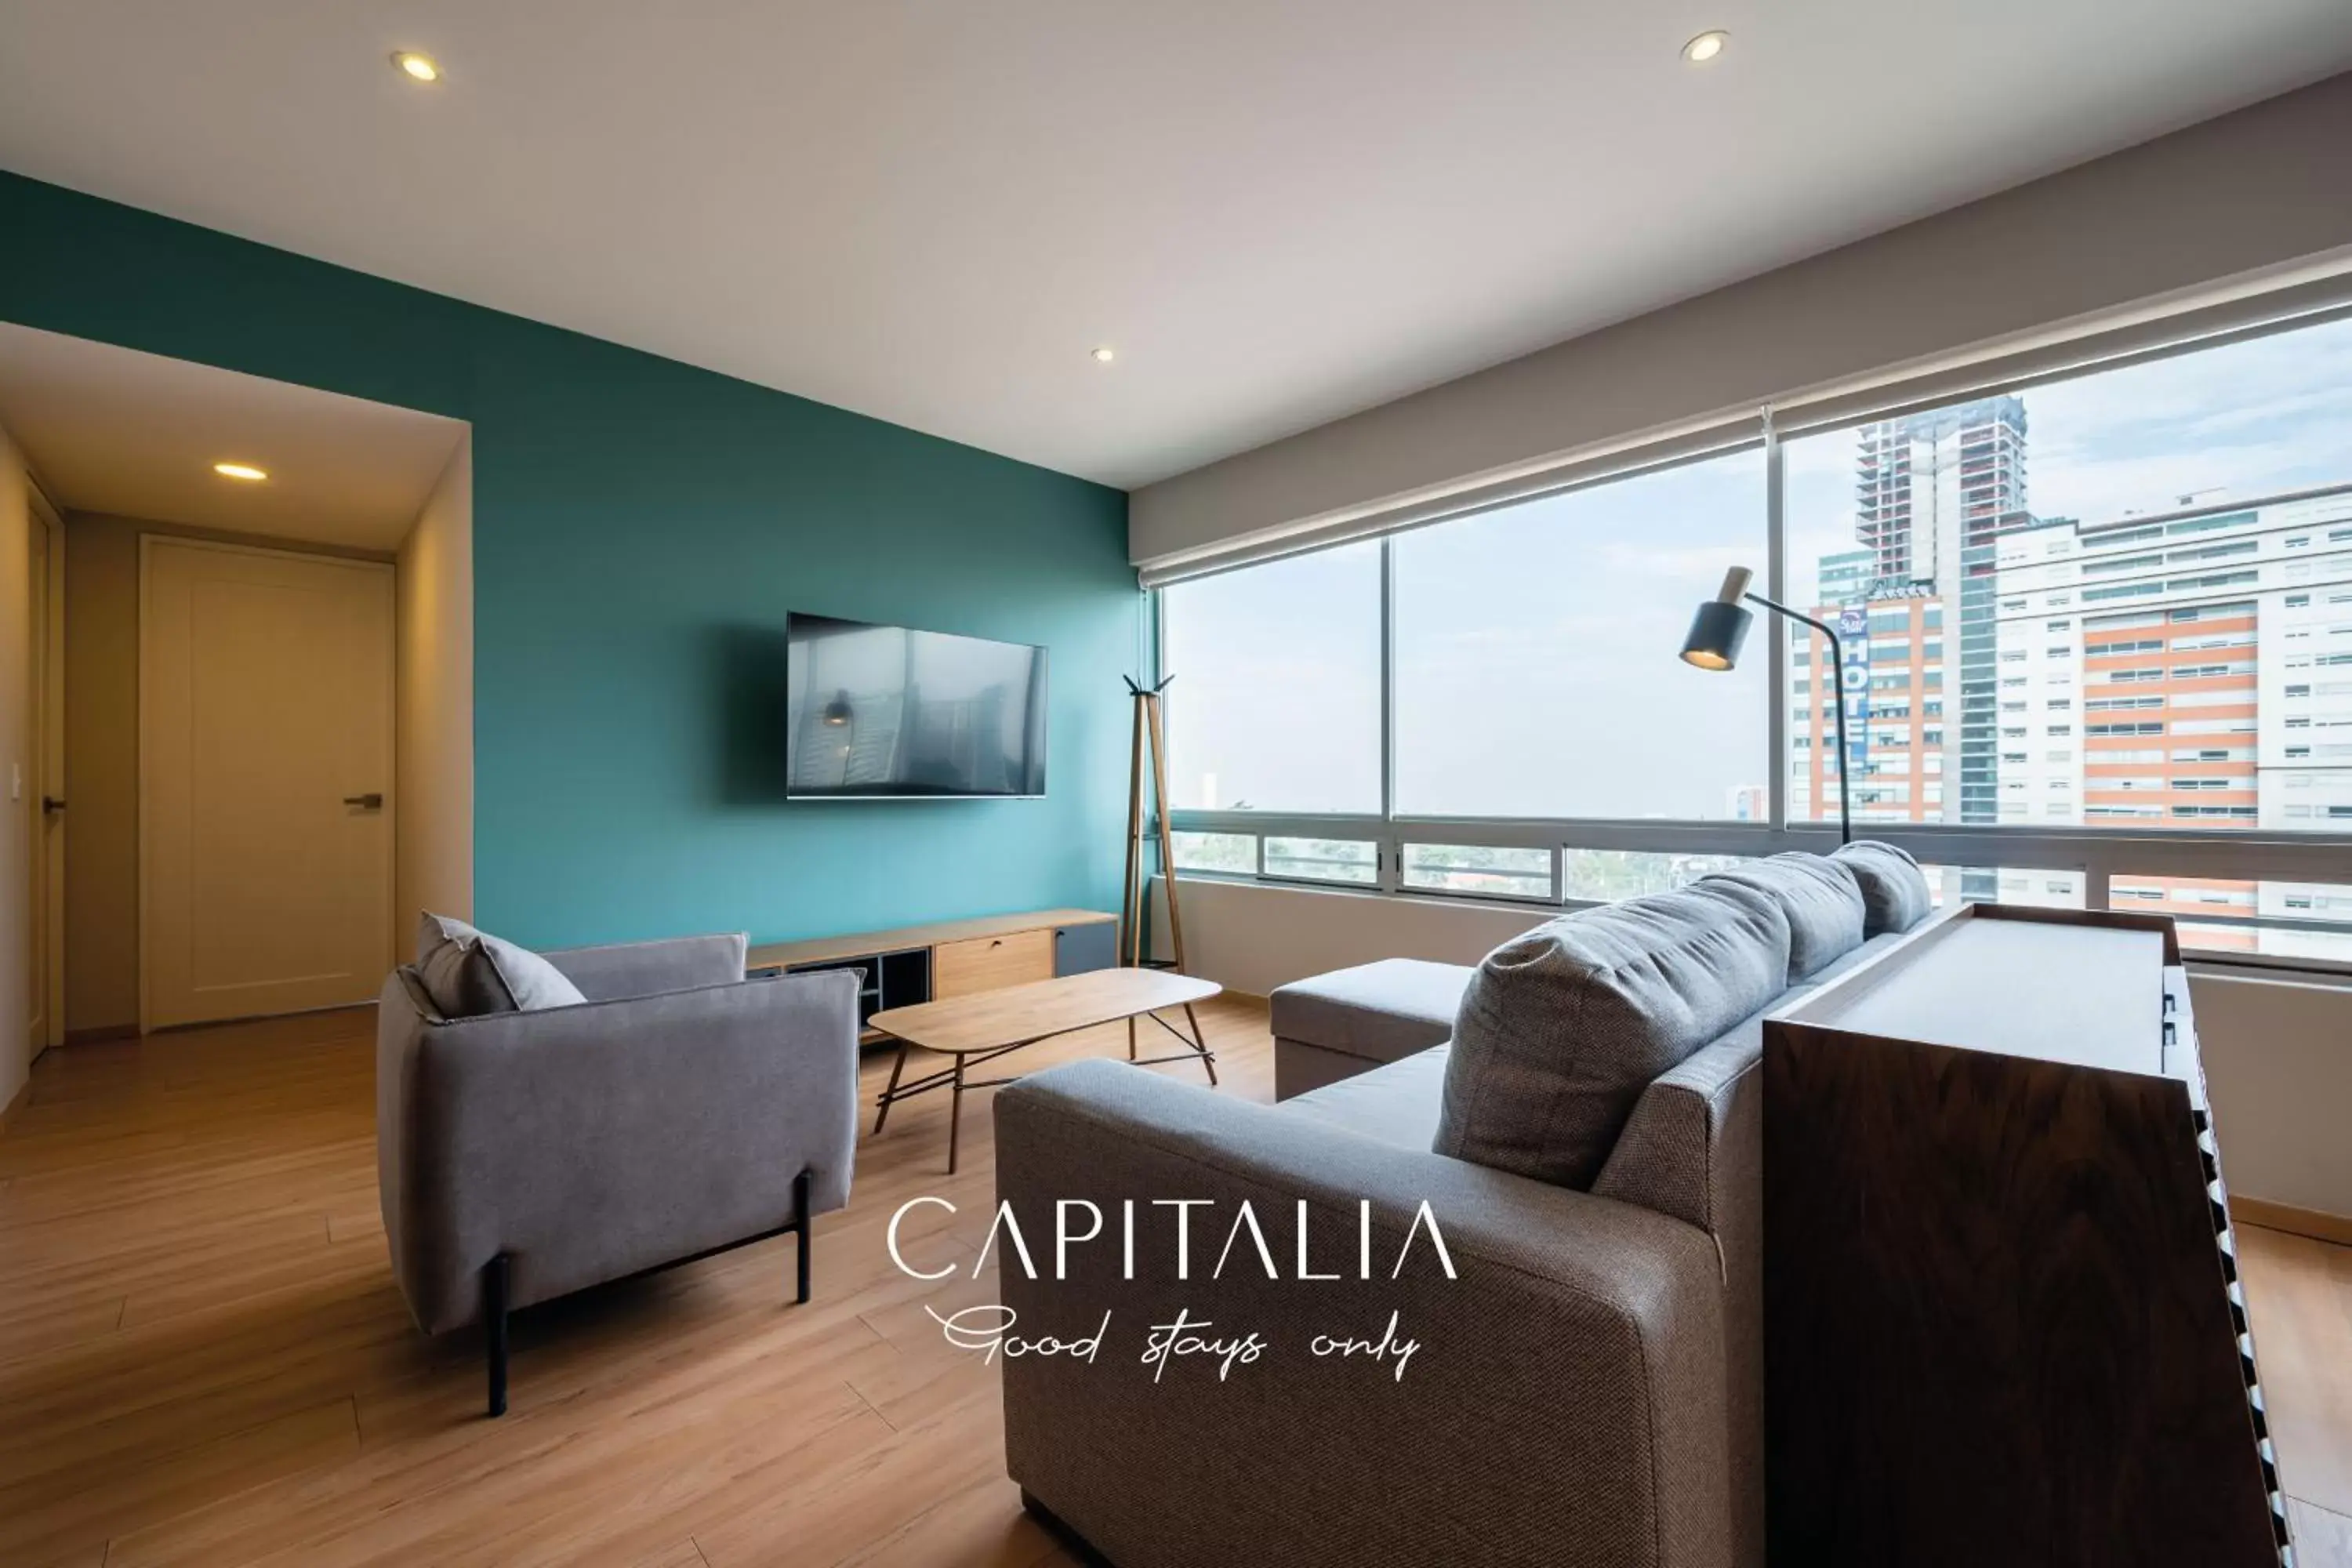 Superior Apartment in Capitalia - Apartments - Santa Fe